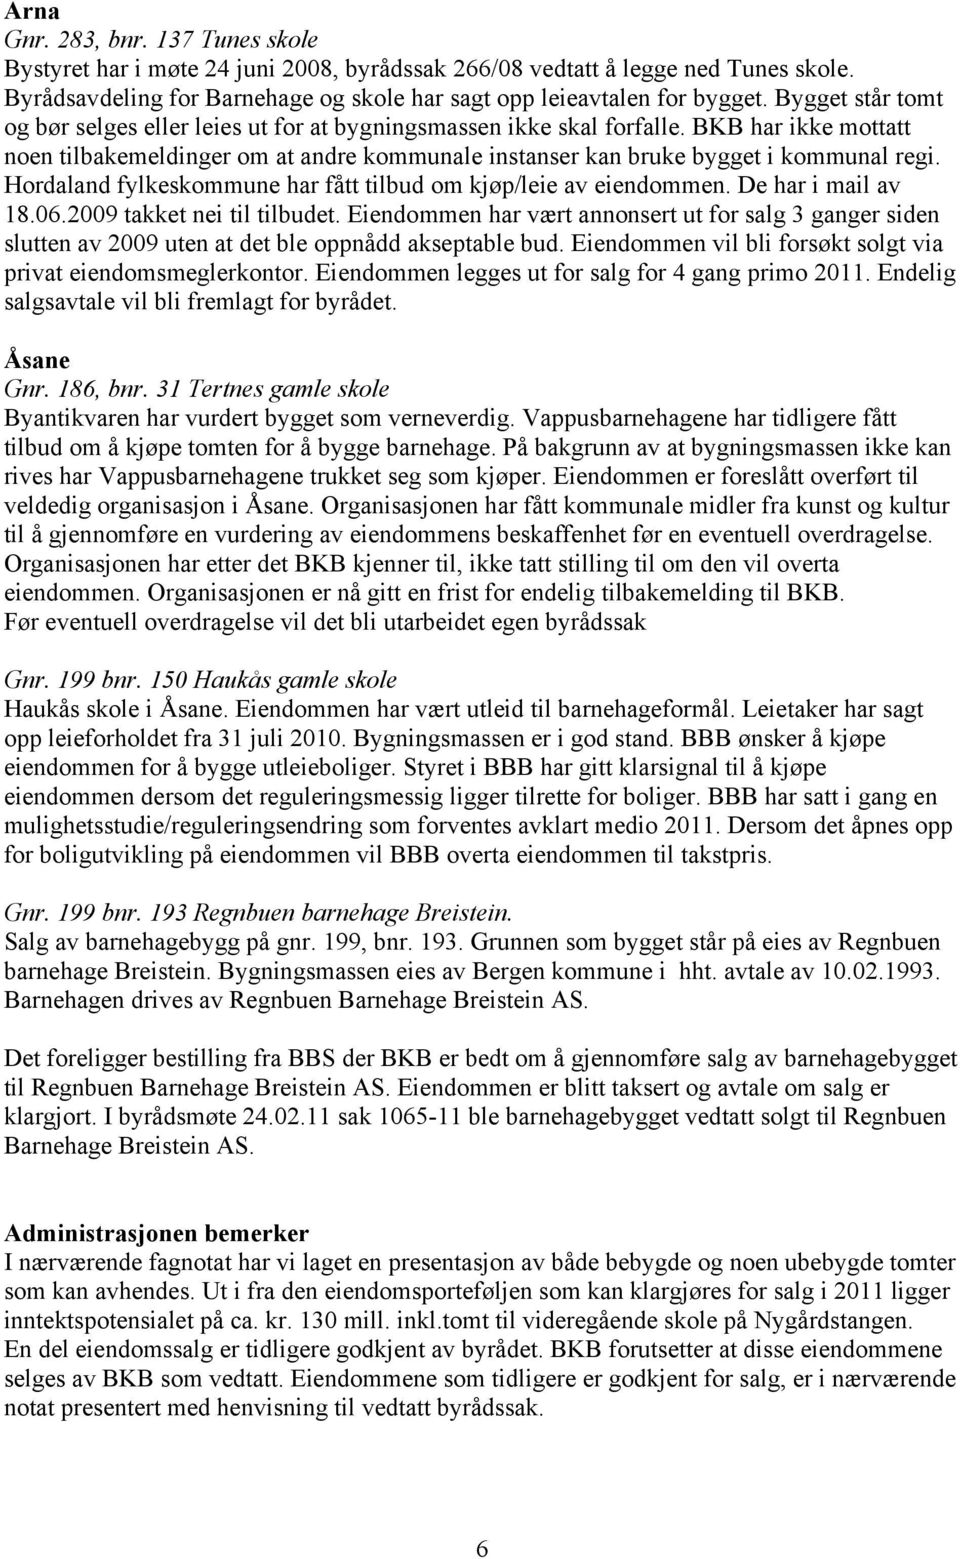 Hordaland fylkeskommune har fått tilbud om kjøp/leie av eiendommen. De har i mail av 18.06.2009 takket nei til tilbudet.